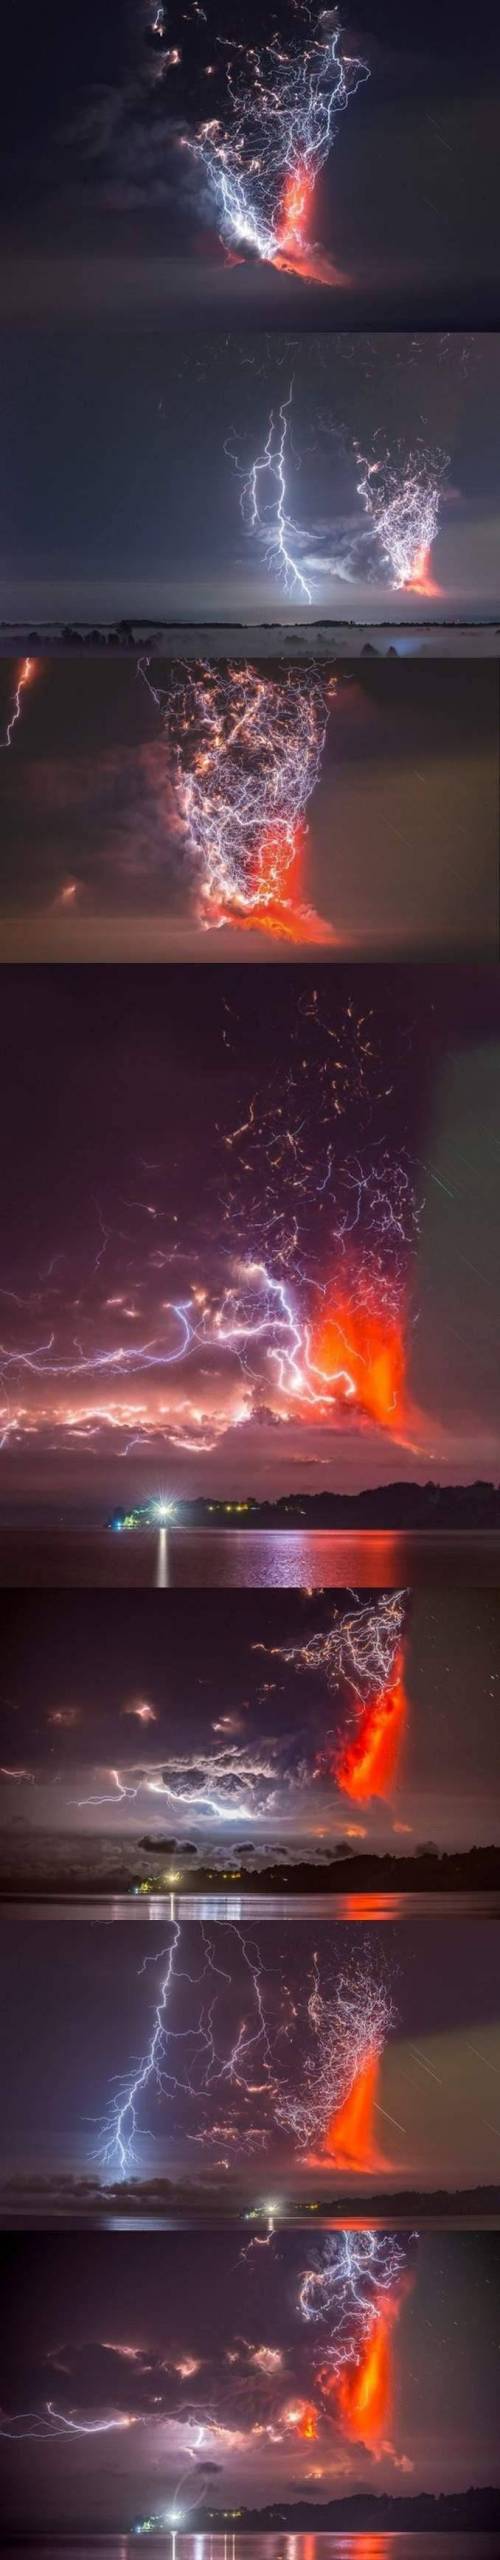 화산폭발 vs 번개.jpg